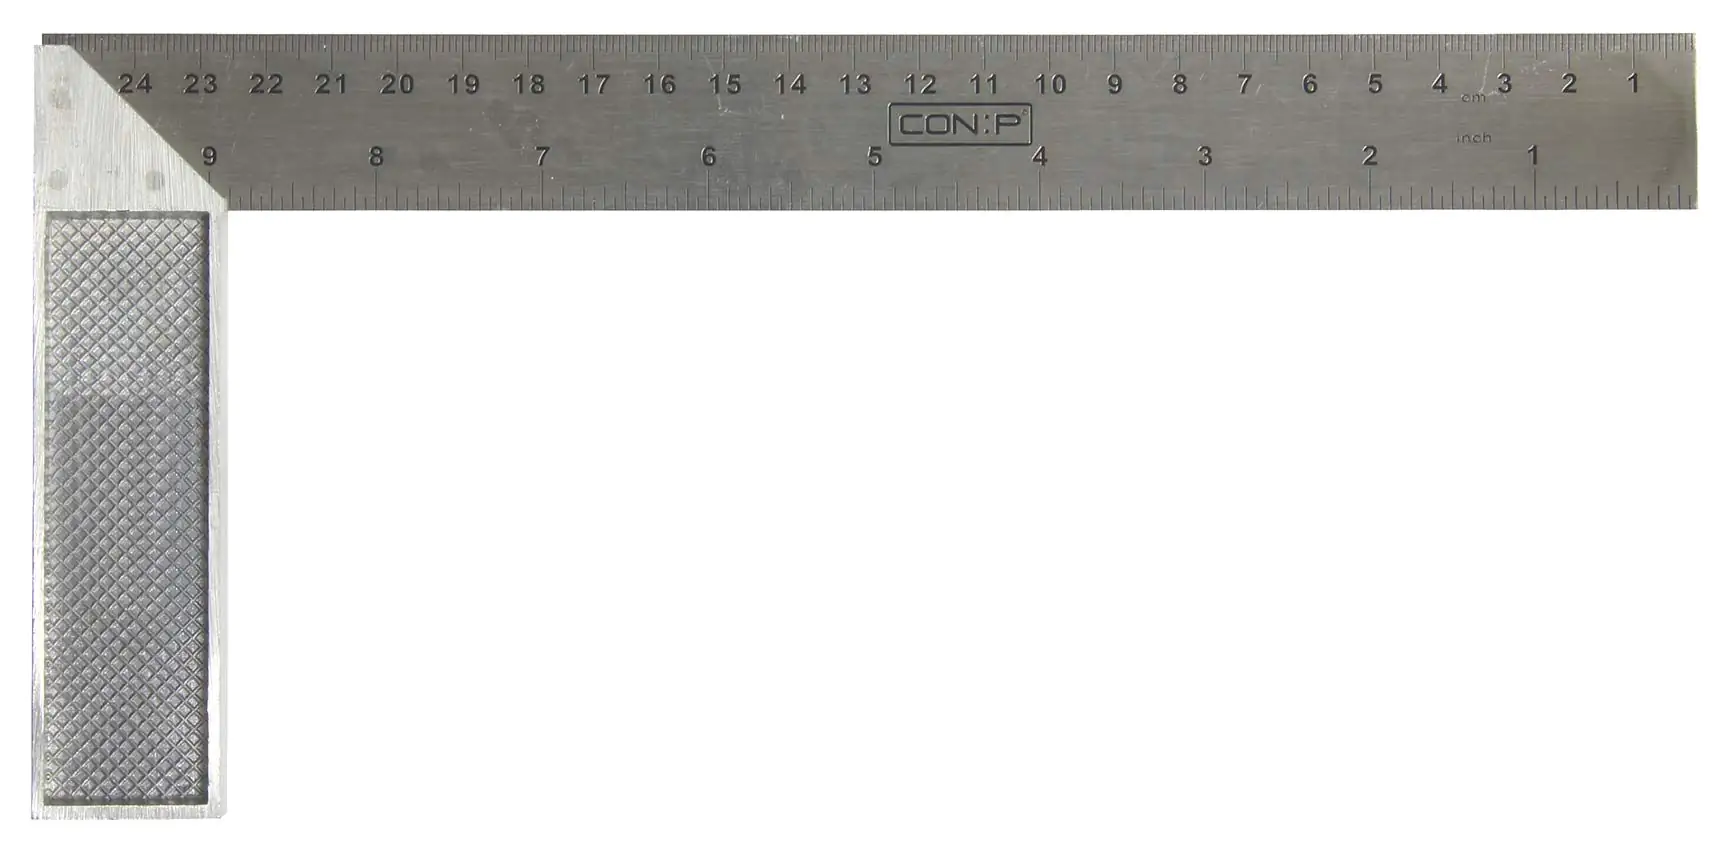 STUBAI Tischlerwinkel mit Gehrung und Maßeinteilung 250 mm, hochwertige  Federstahlschiene mit Nussholzschenkel, Profi Winkelmesser für präzise  Messungen und Markierungen